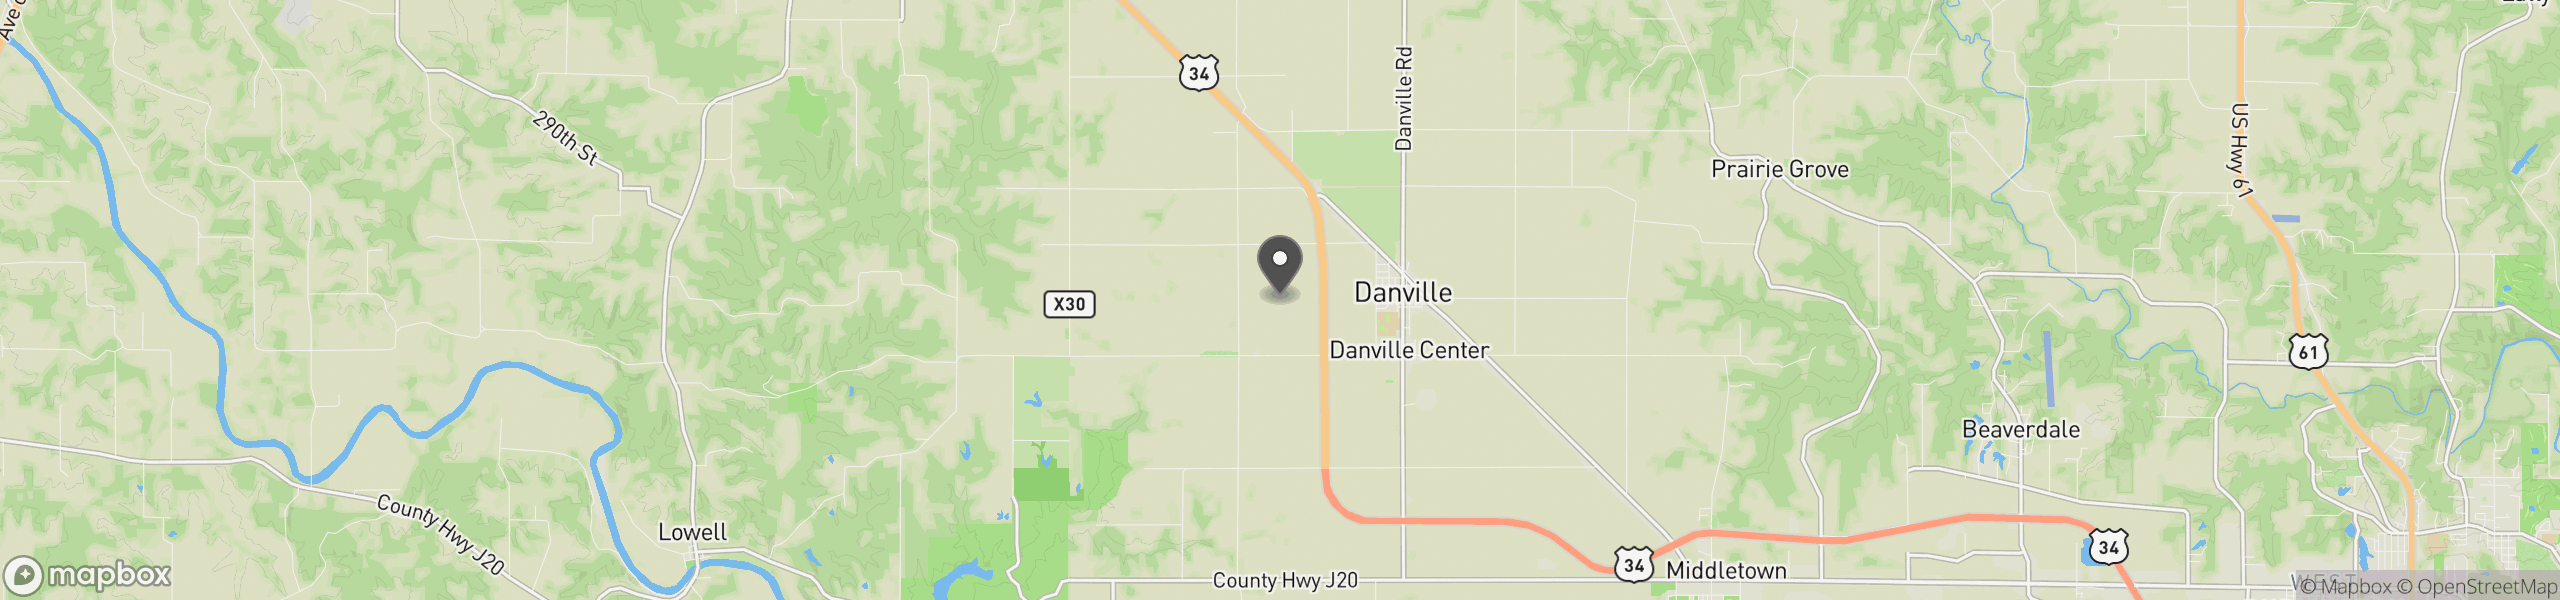 Danville, IA 52623